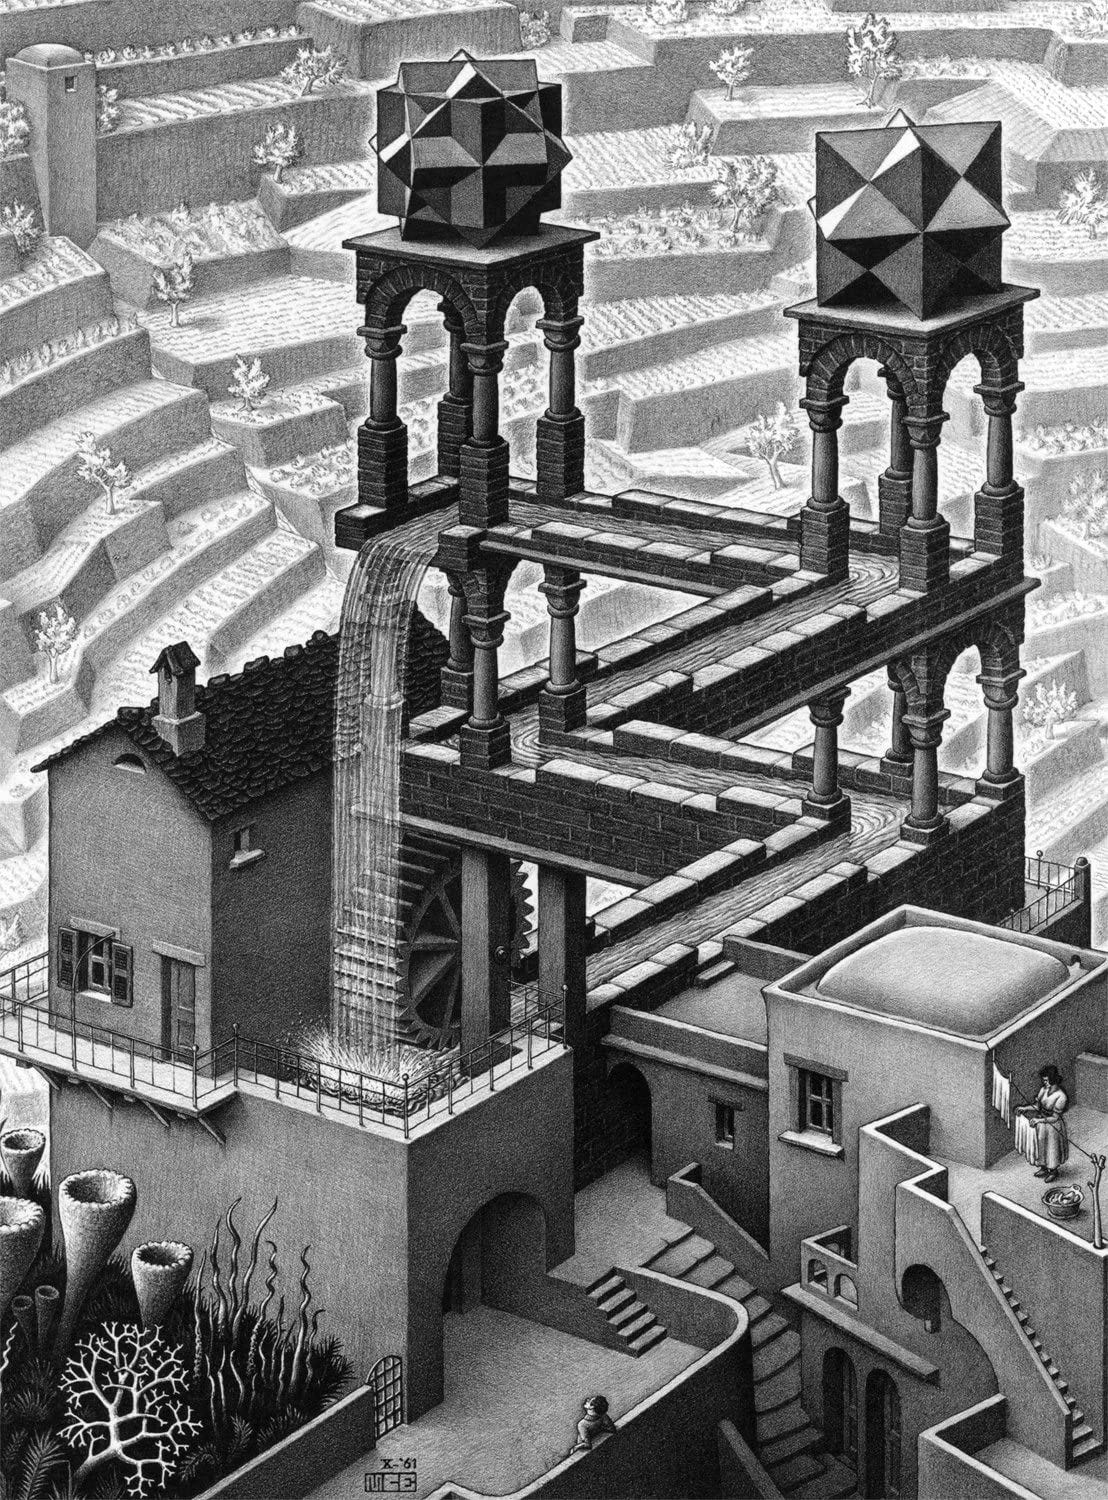 Amazon.com: Buffalo Games M.C. Escher, Waterfall - 1000pc Jigsaw Puzzle ...